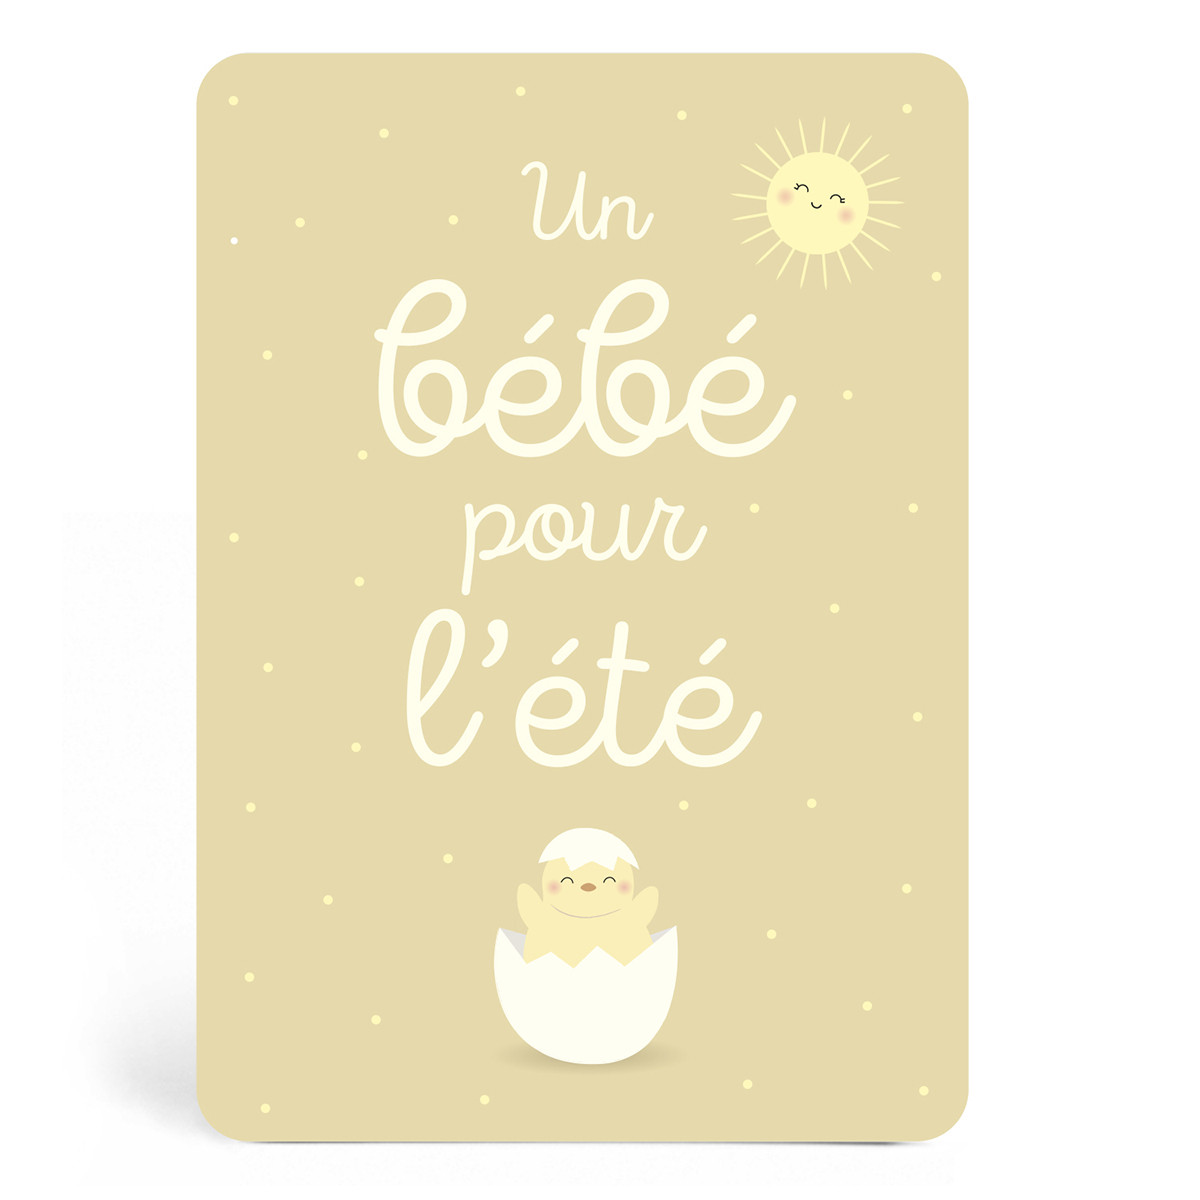 Cartes étapes premiers mois pour bébé, imprimé en France - Zü